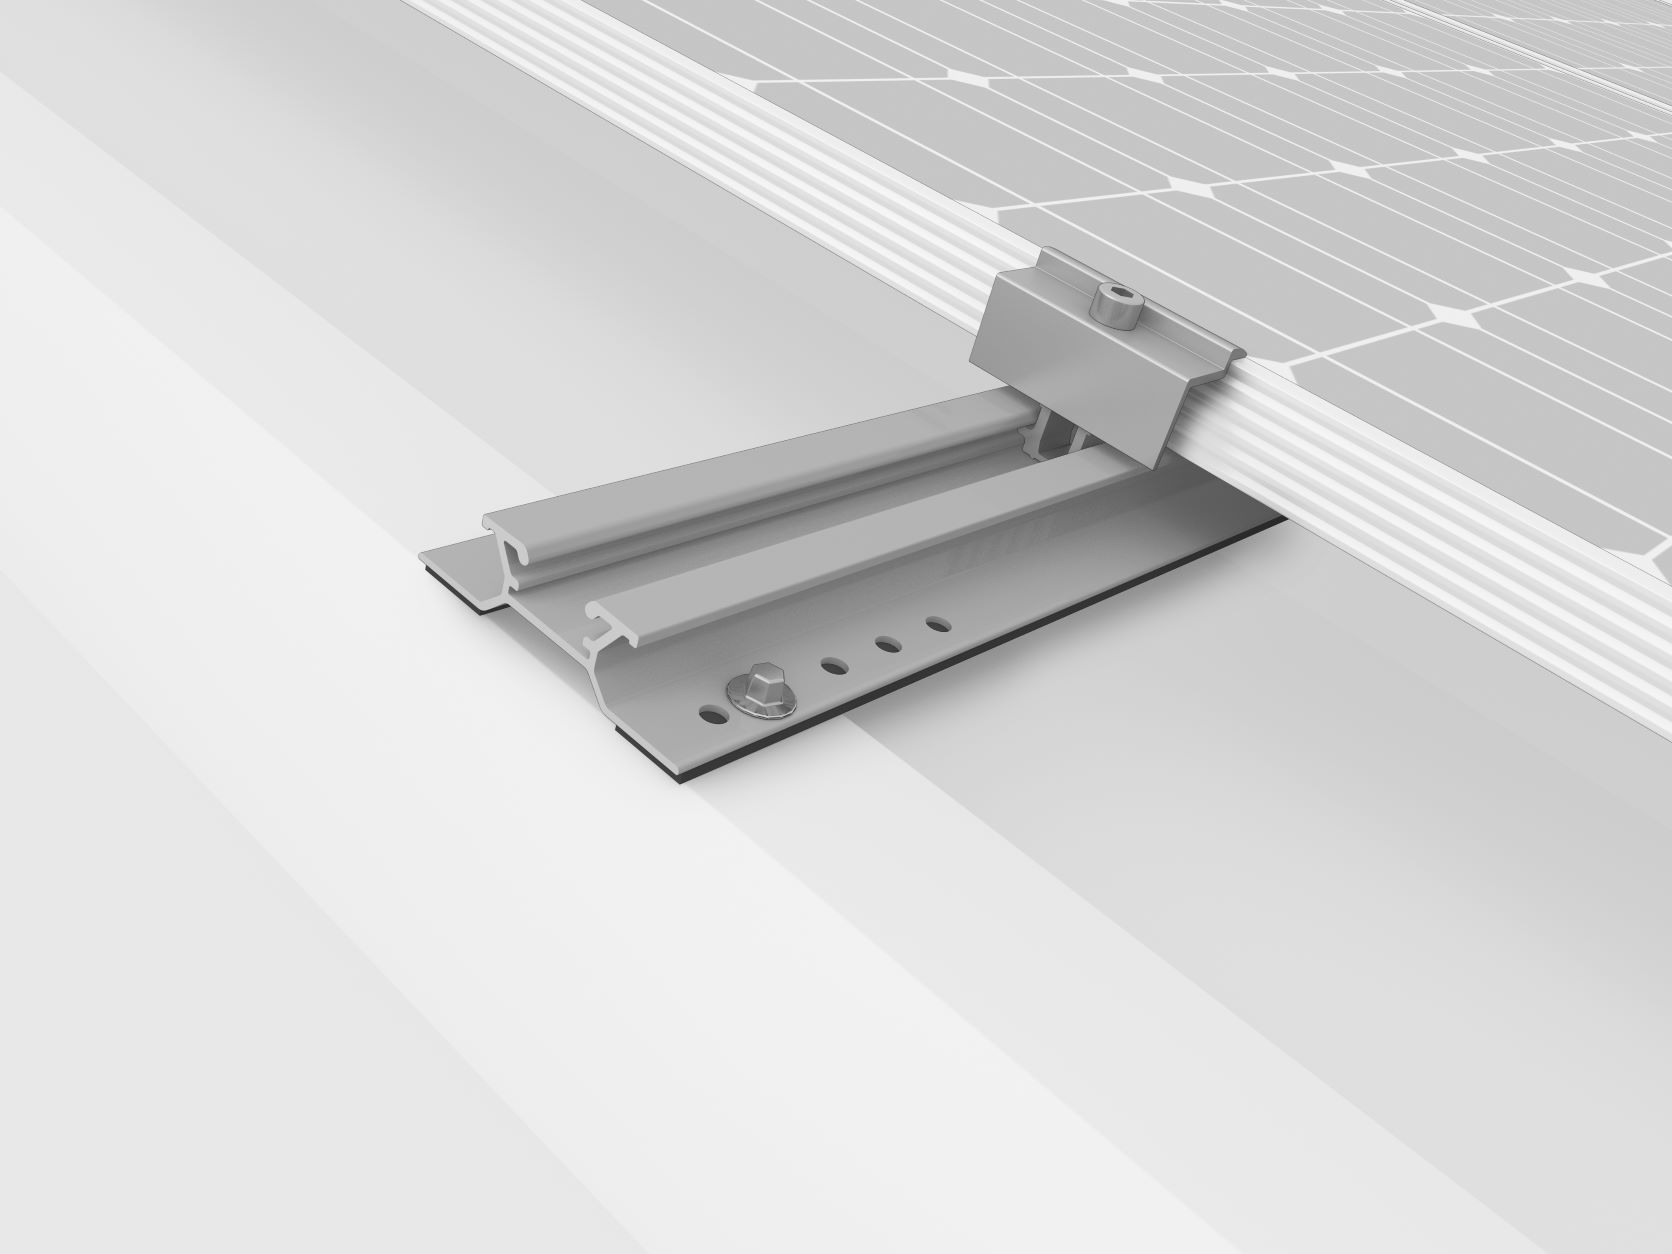 Die Abbildung das MiniRail System, eine Aufdachanlage für Trapezdächer der Firma K2 Systeme.